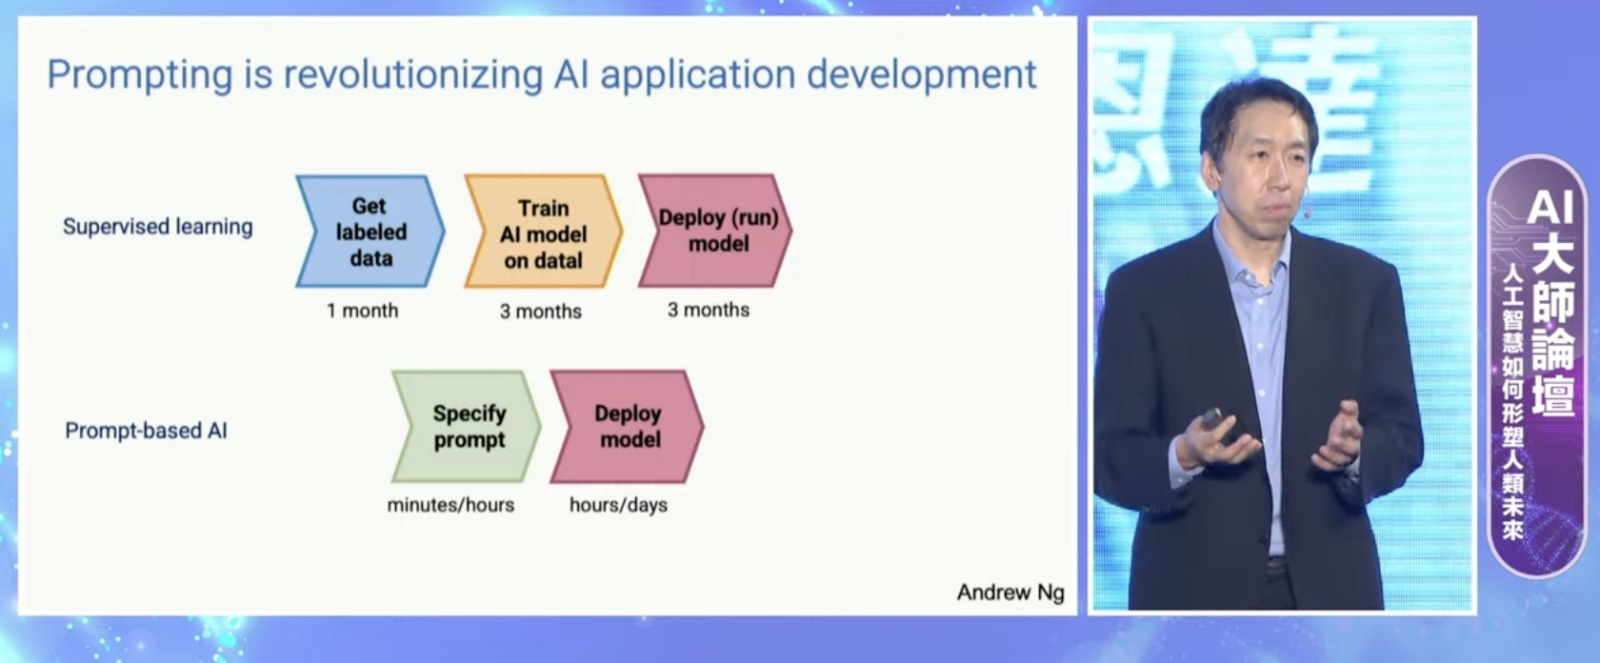 吳恩達-Andrew Ng-ai-生成式ai-人工智慧-科技趨勢-科技應用-ai應用-商業模式-監督式學習-語言模型-程式-工程師